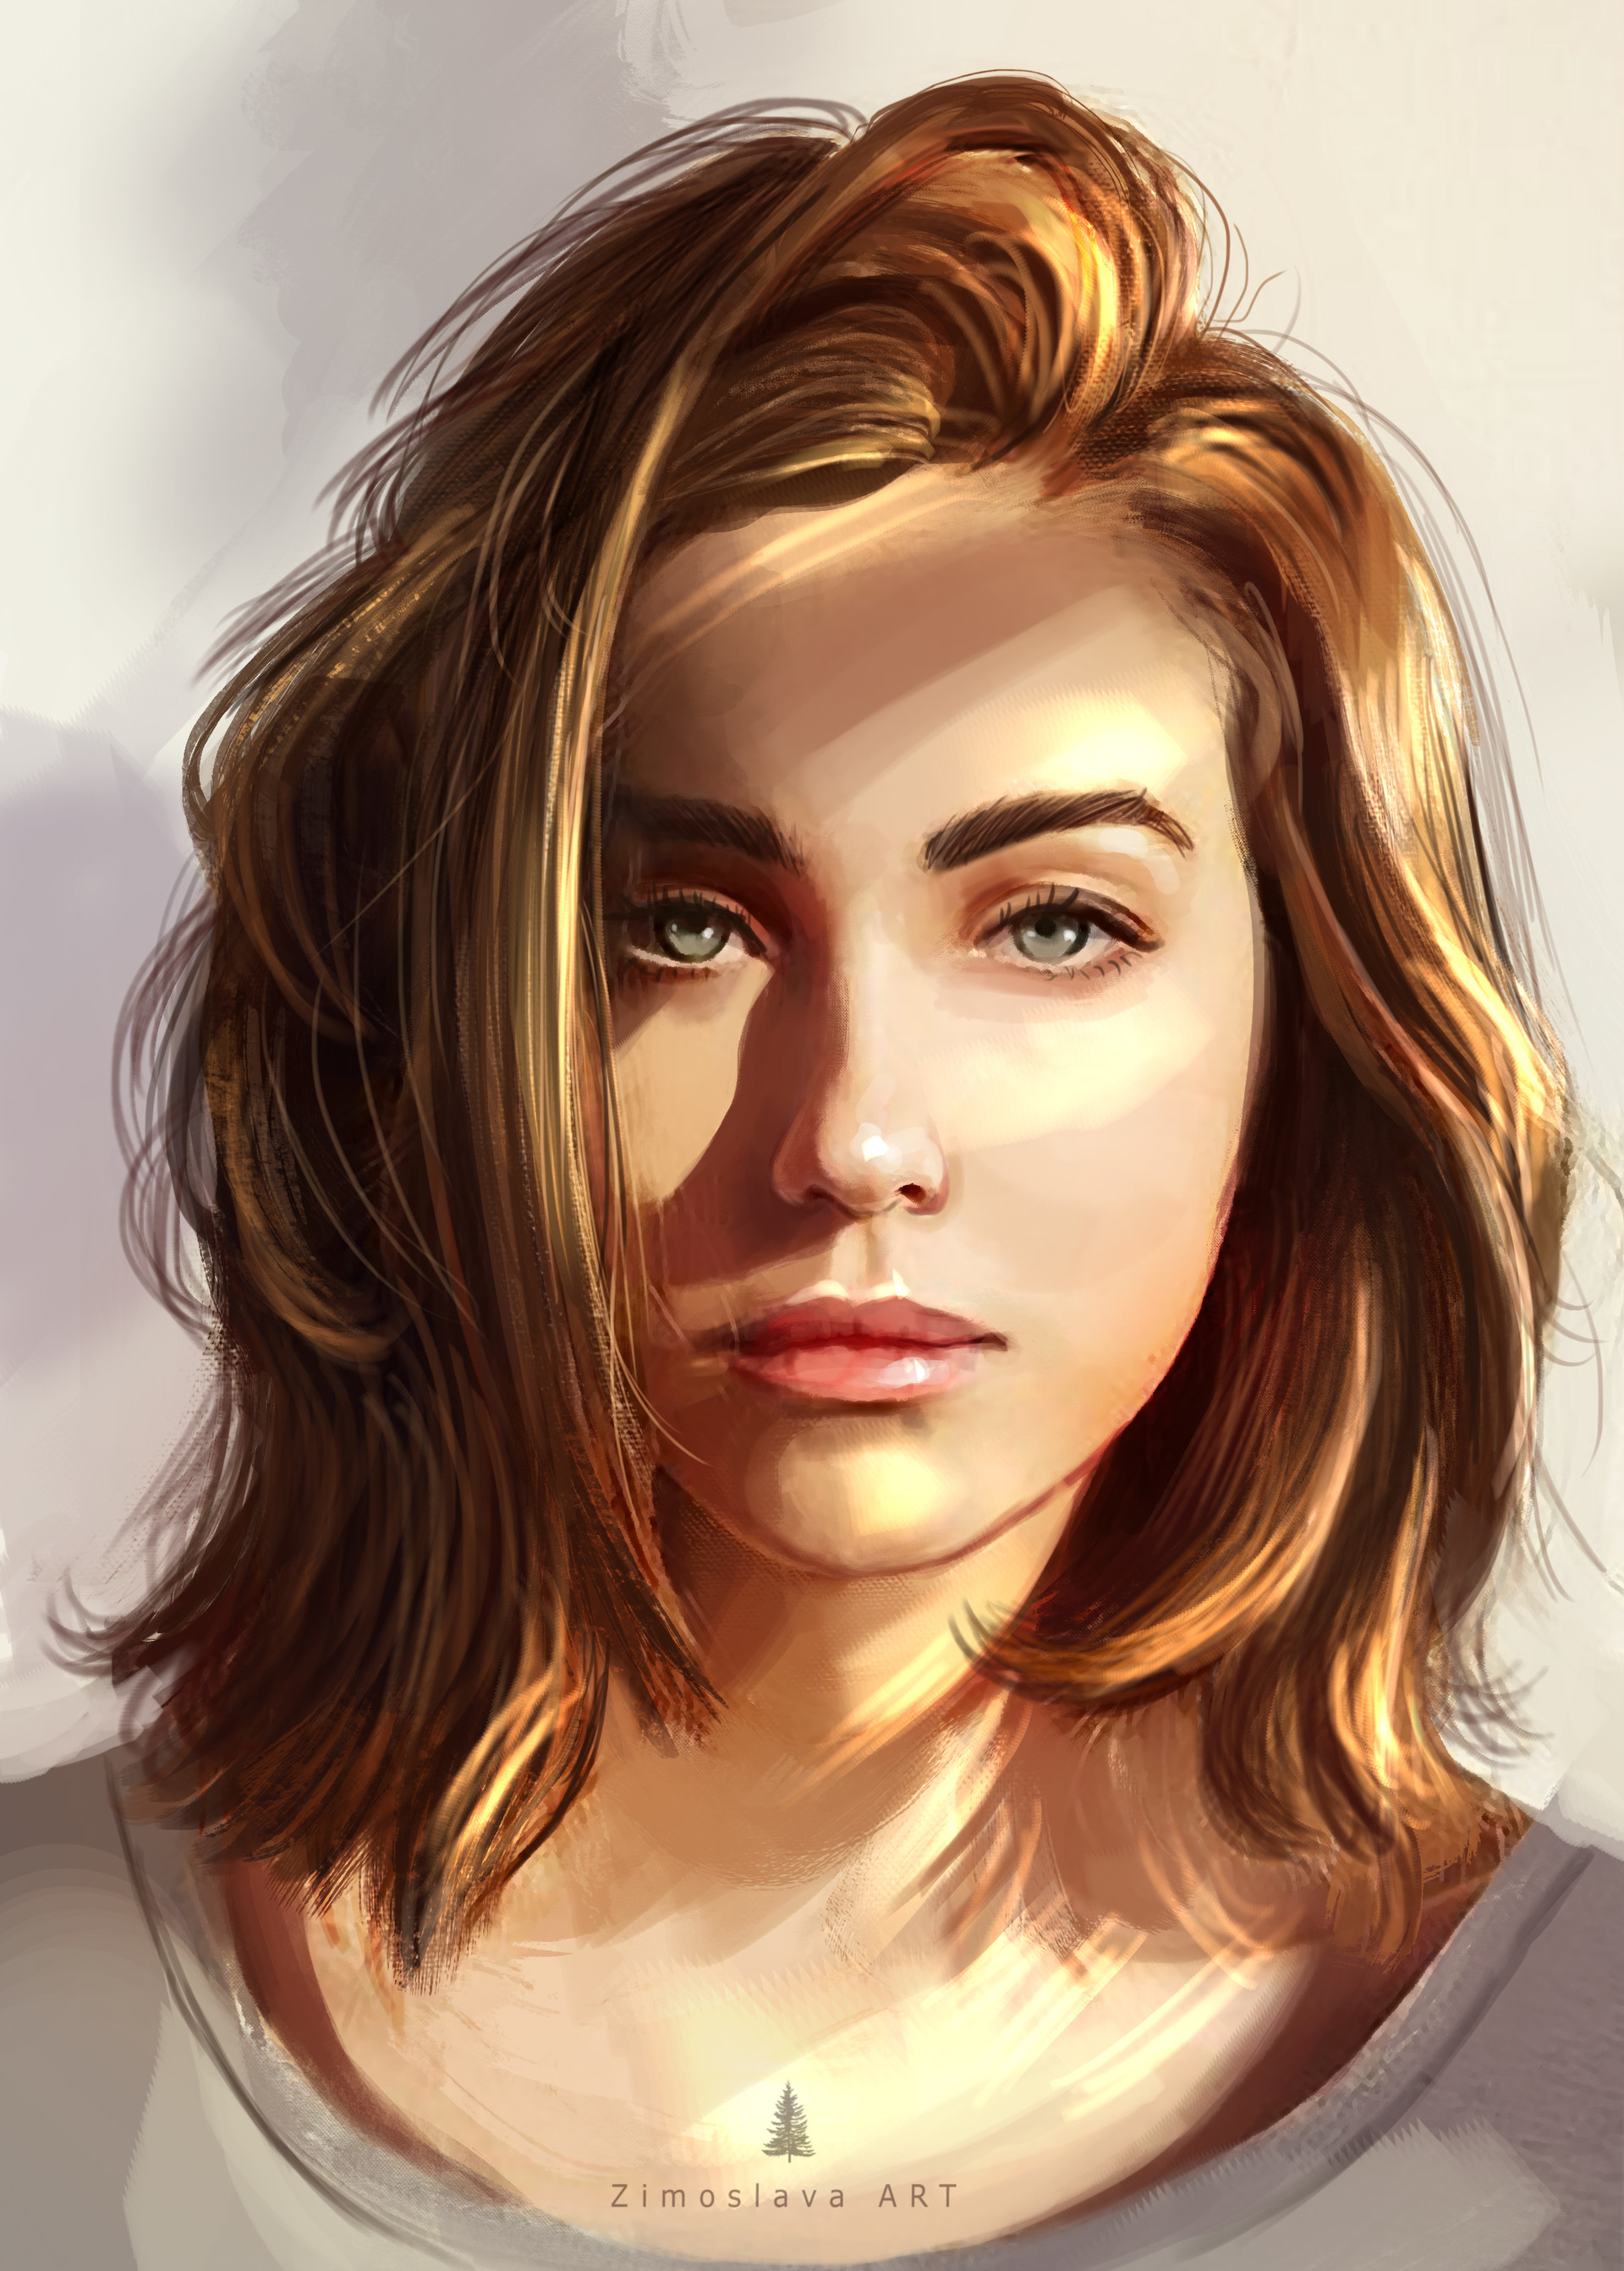 Zimoslava ART - sketch girl portrait